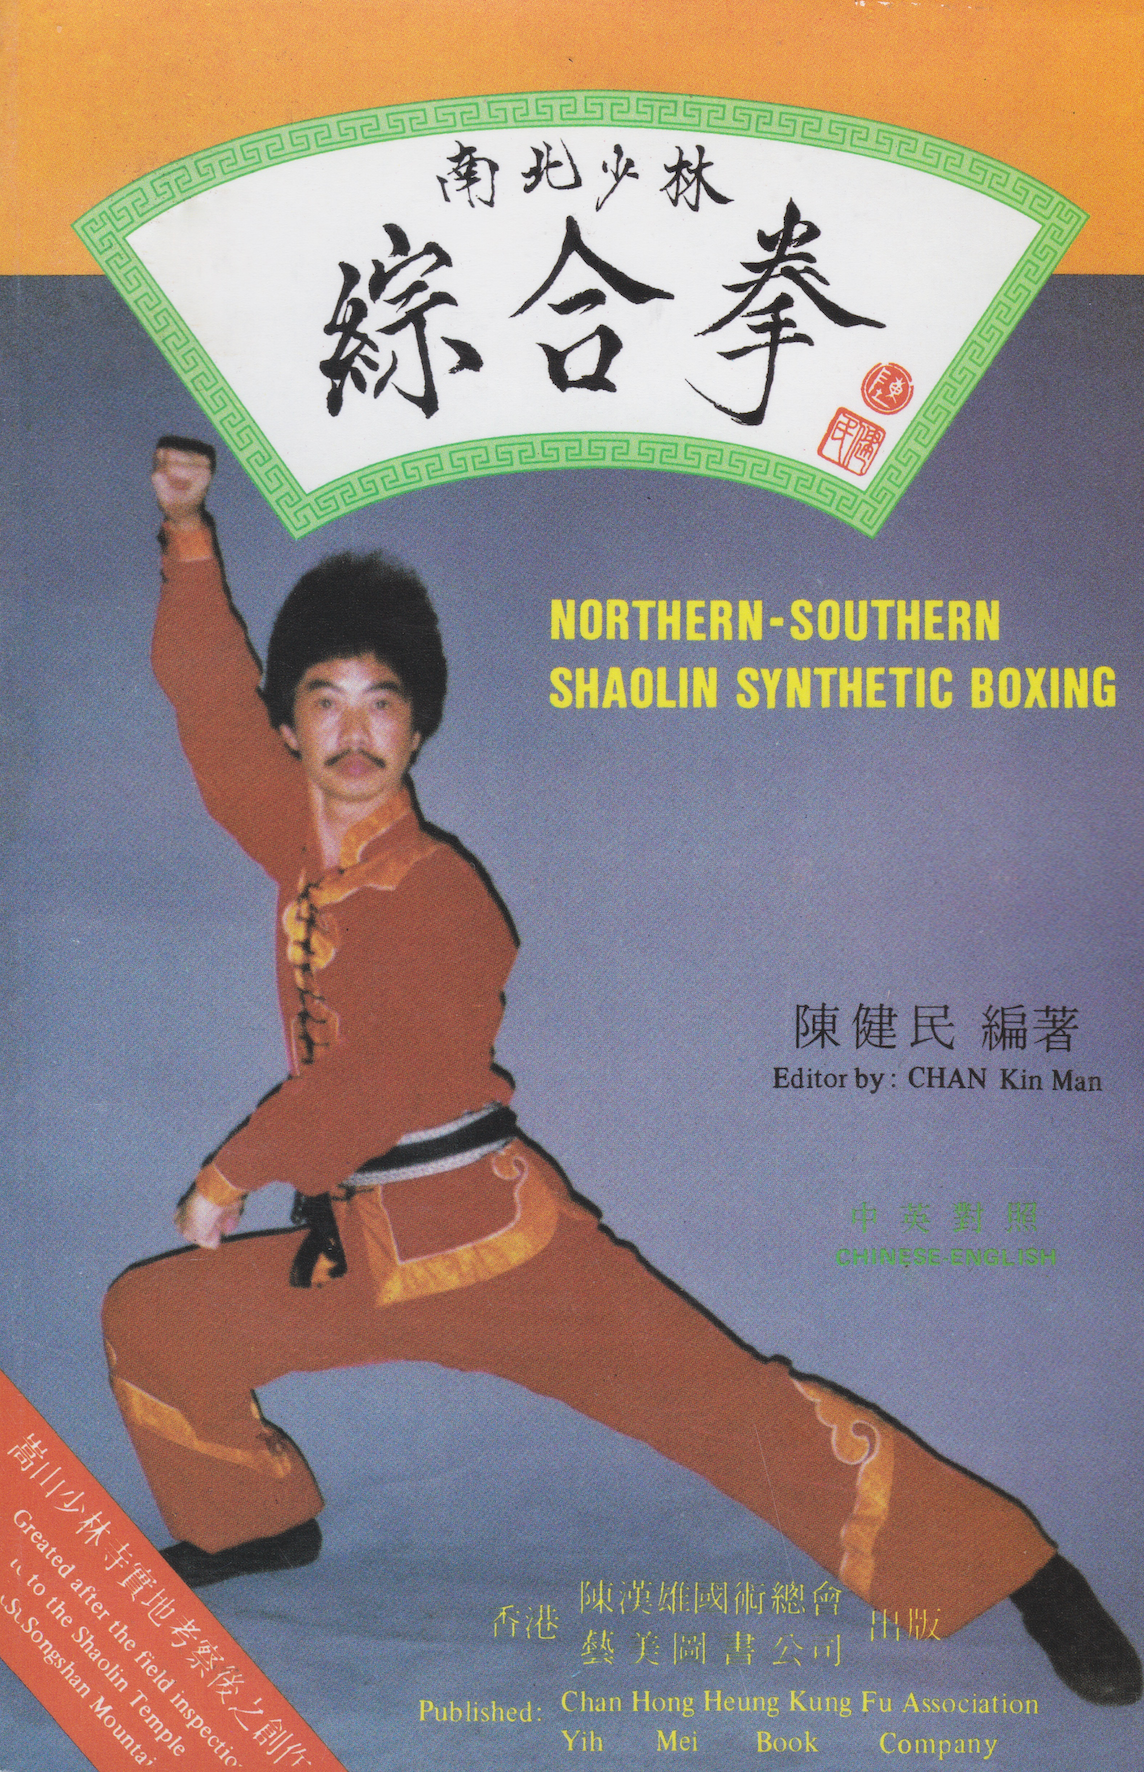 Libro de boxeo sintético Northern Southern Shaolin de Kin Man Chan